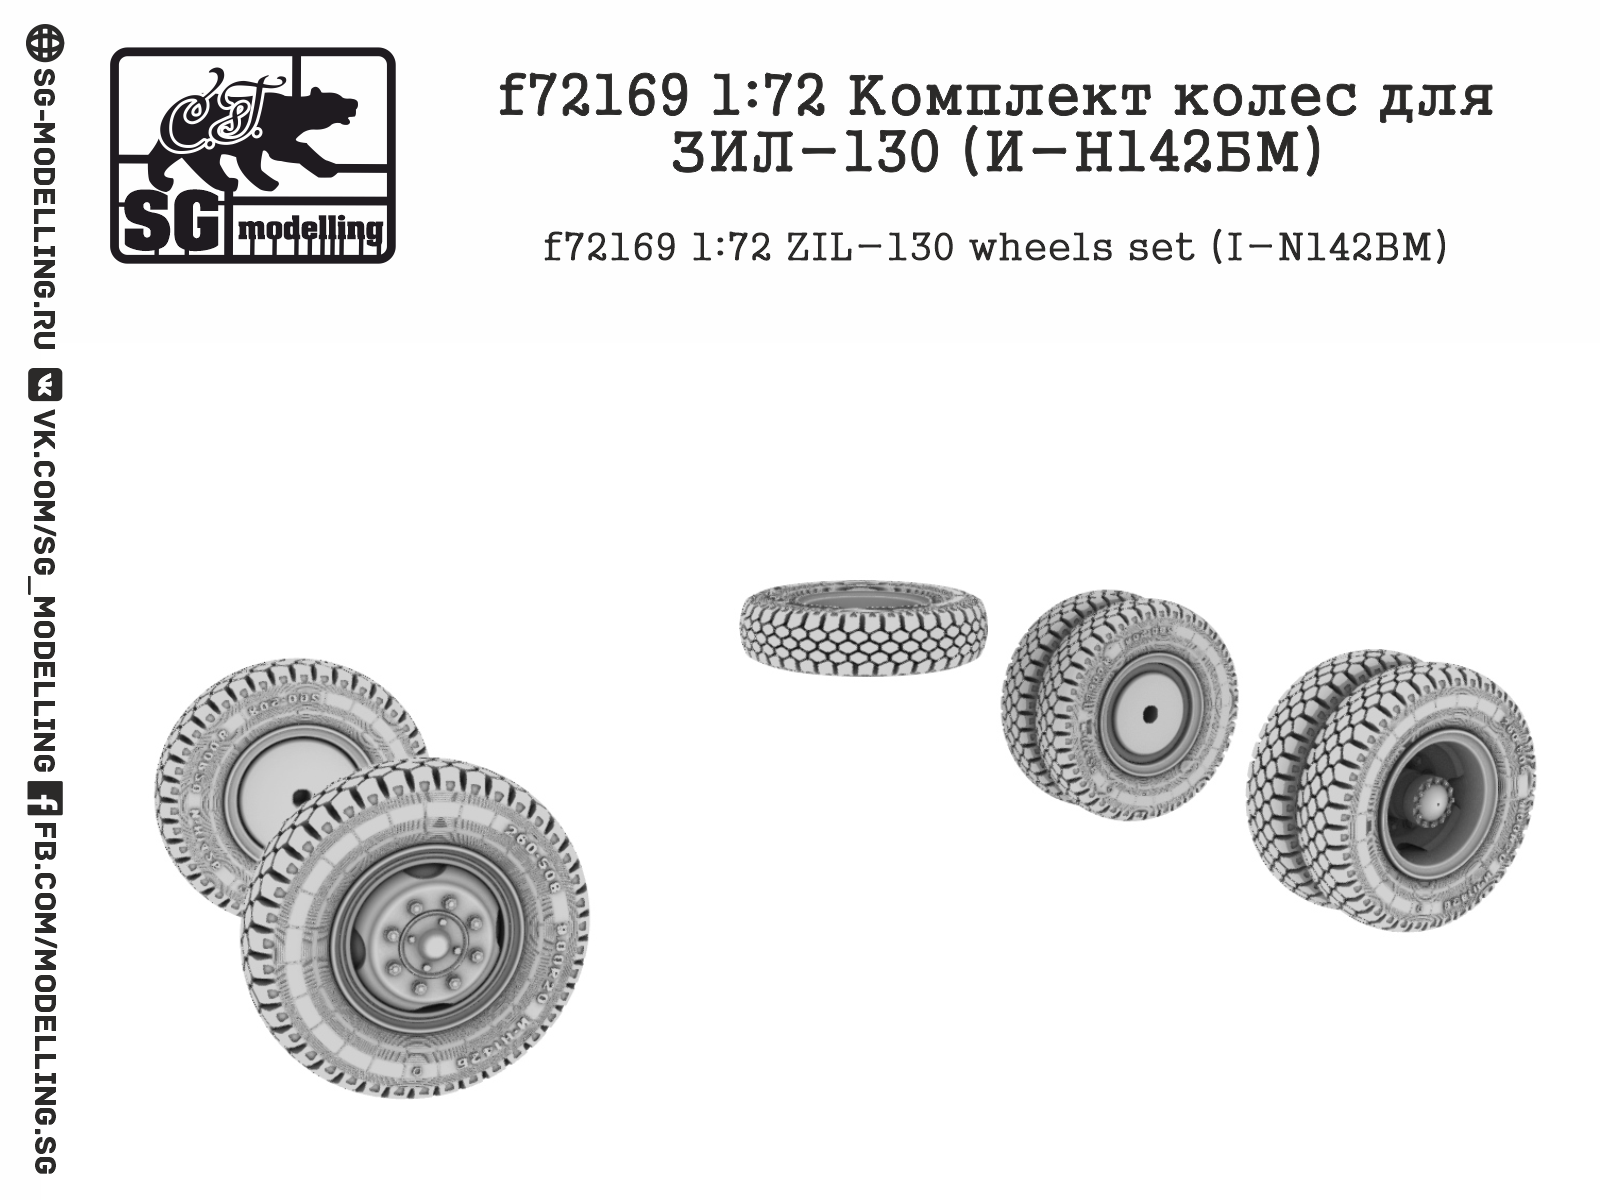 ZIL-130 (I-N142BM) wheels - Click Image to Close